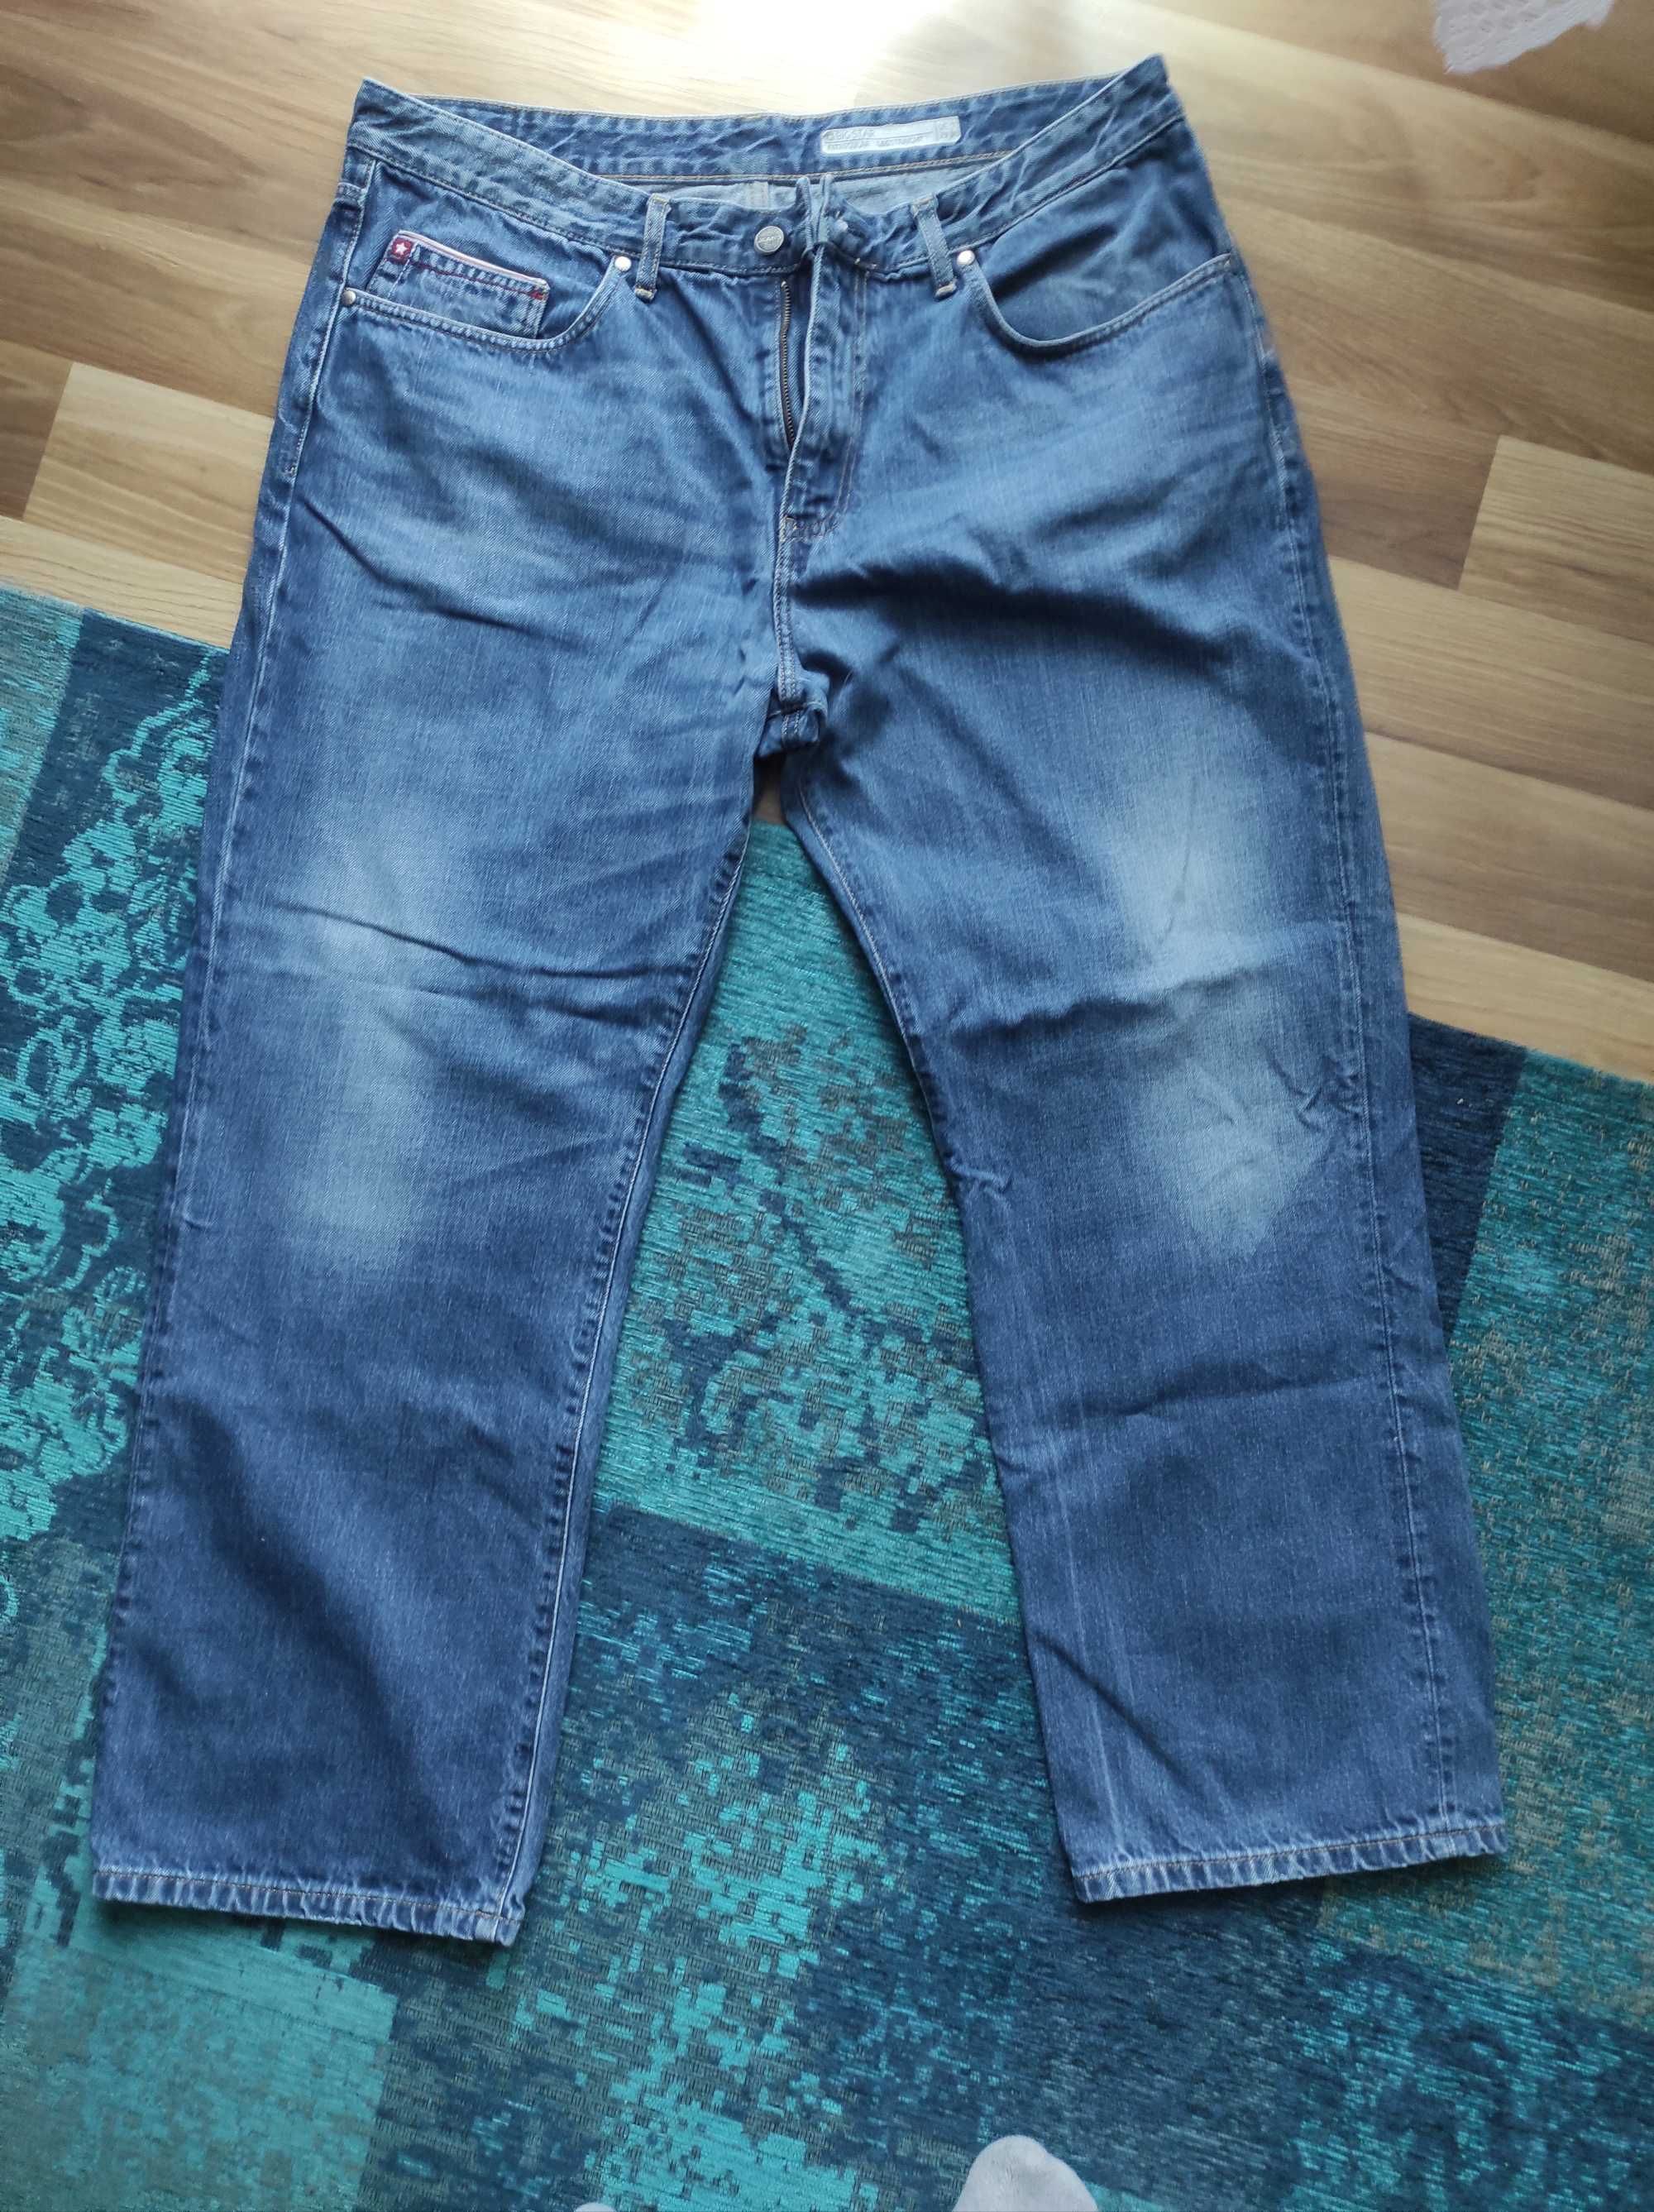 Spodnie męskie jeansowe Big Star r. 42/32 regular straight